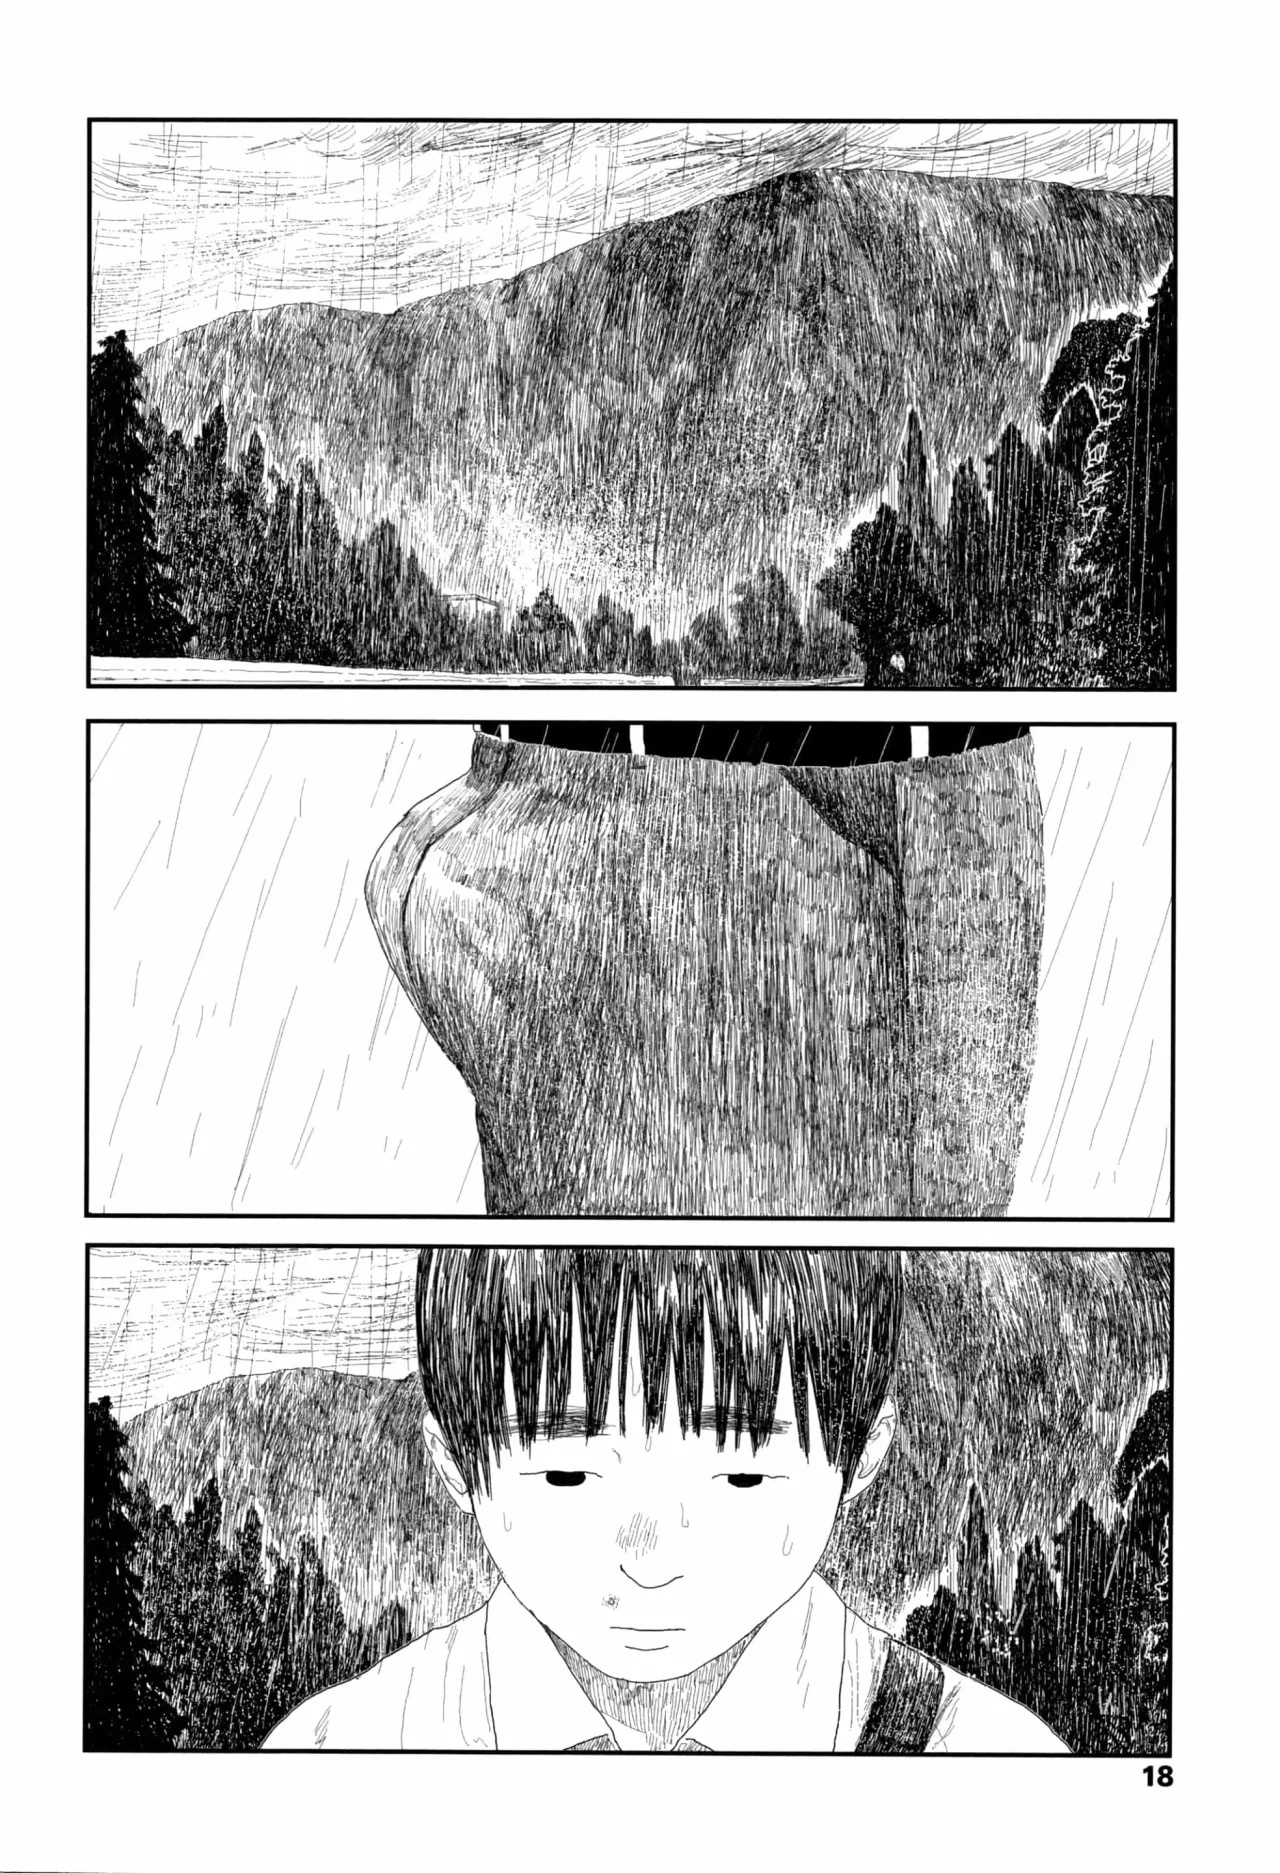 01 - Ochinai Ame Unfalling Rain - 20